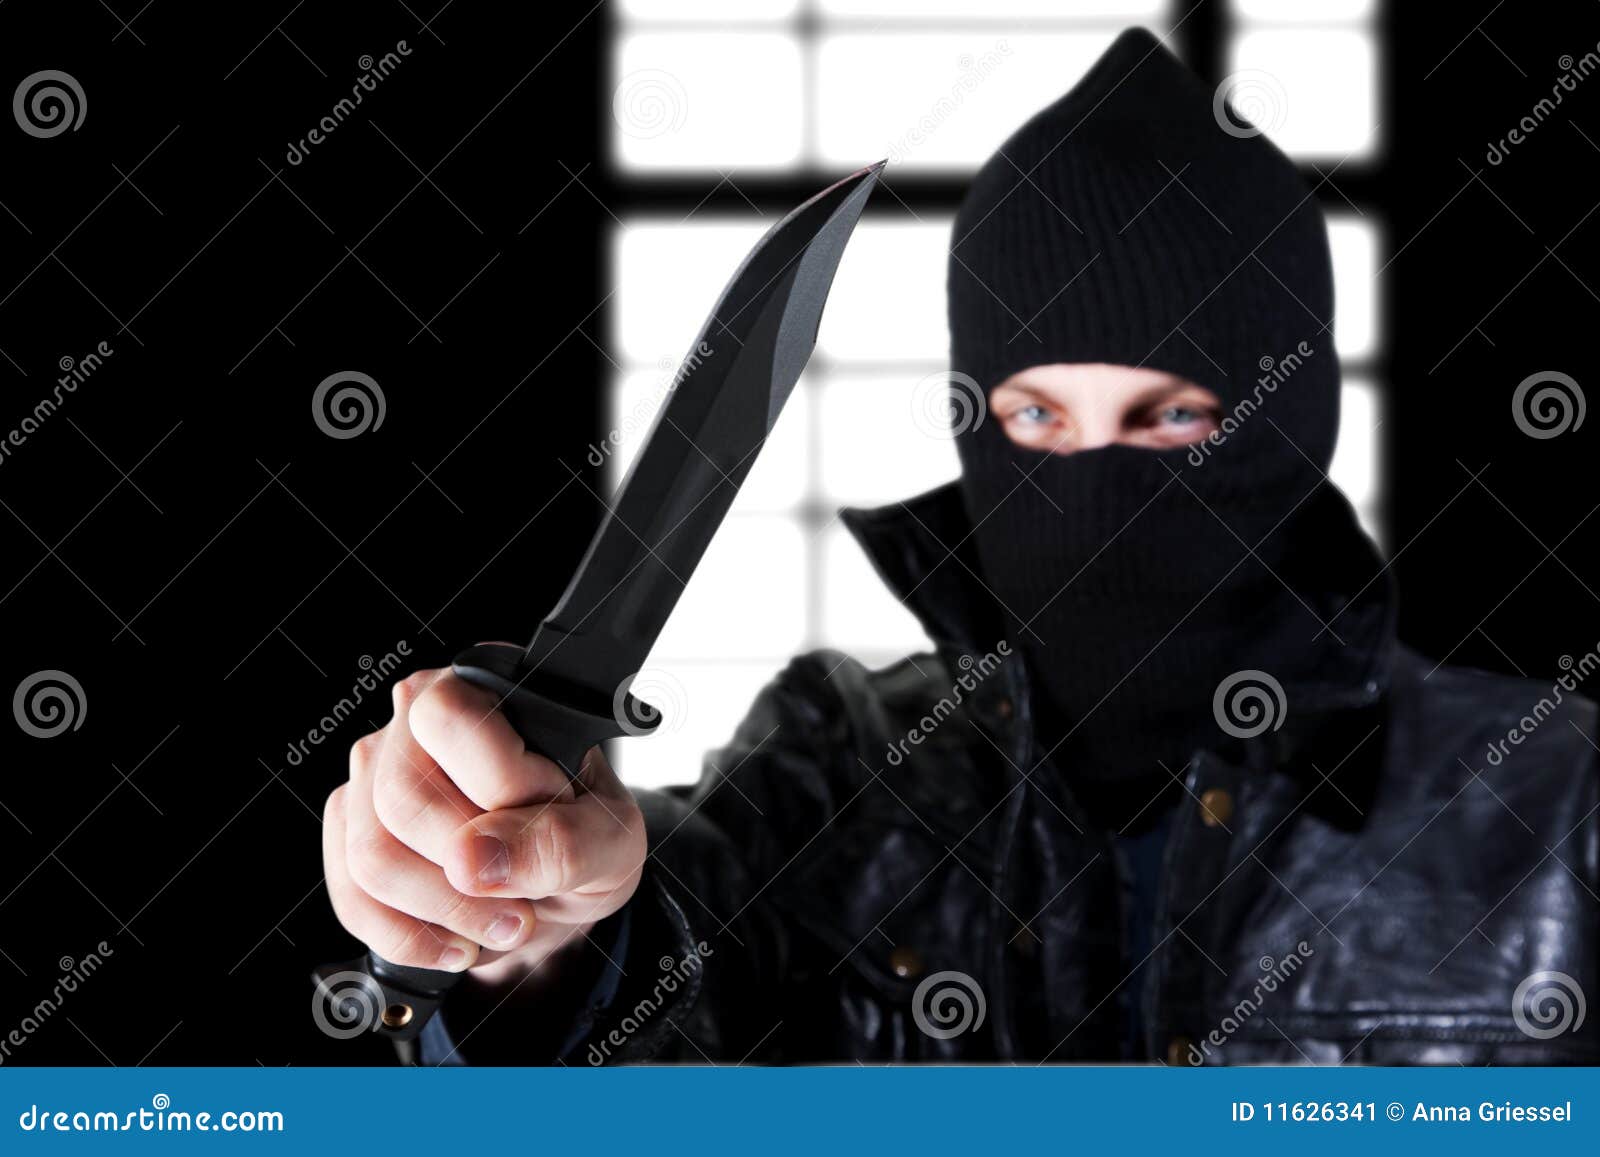 Угрожающий образ. Подкрадывающийся человек с ножом. Личность преступника Эстетика.